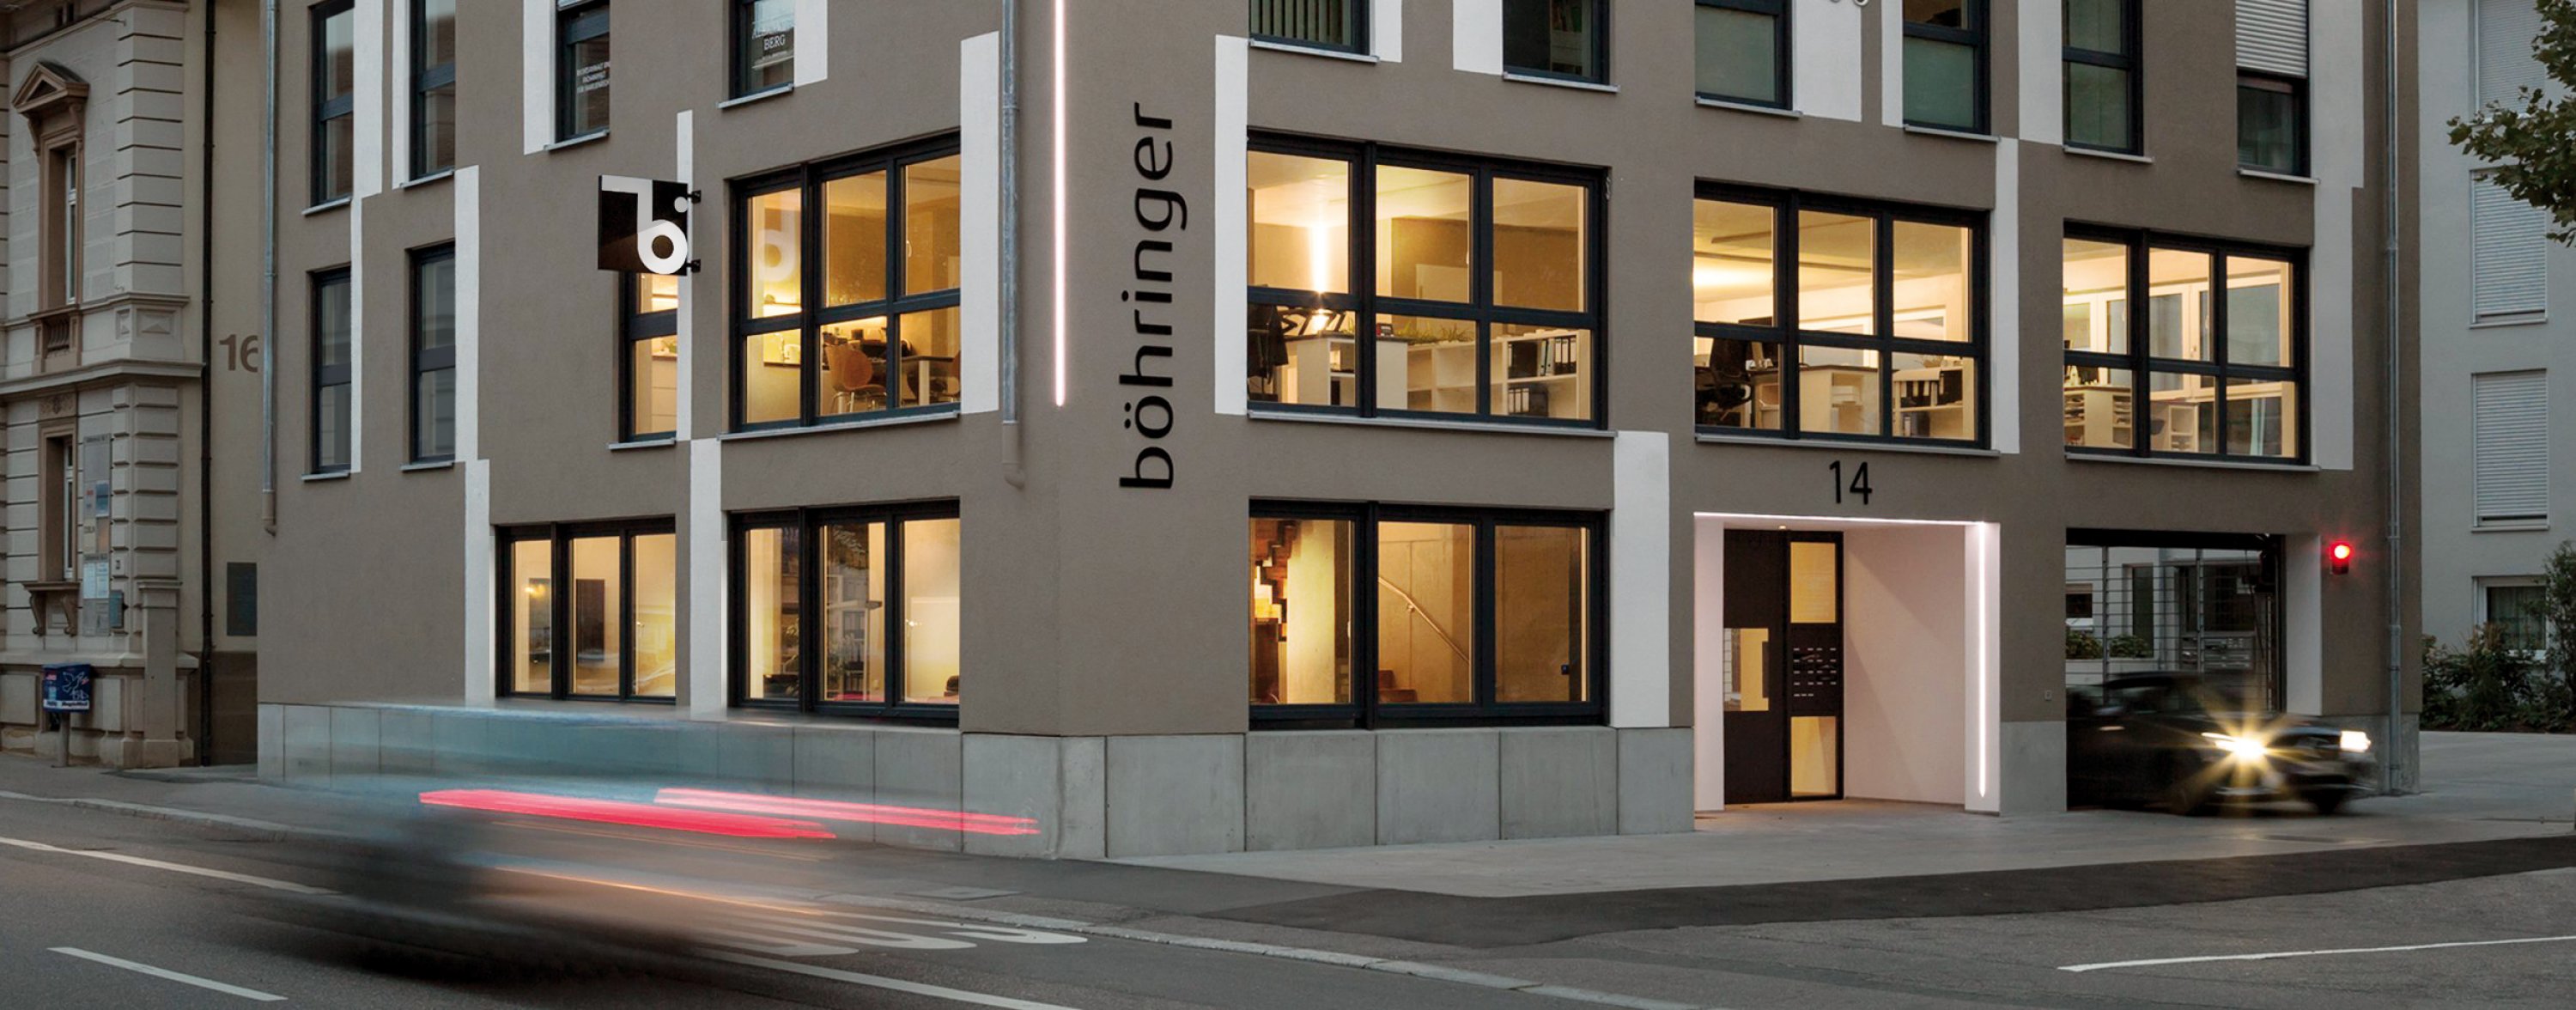 Böhringer Creativbau GmbH – Bauträger, Architekturbüro und Generalunternehmer in Heilbronn